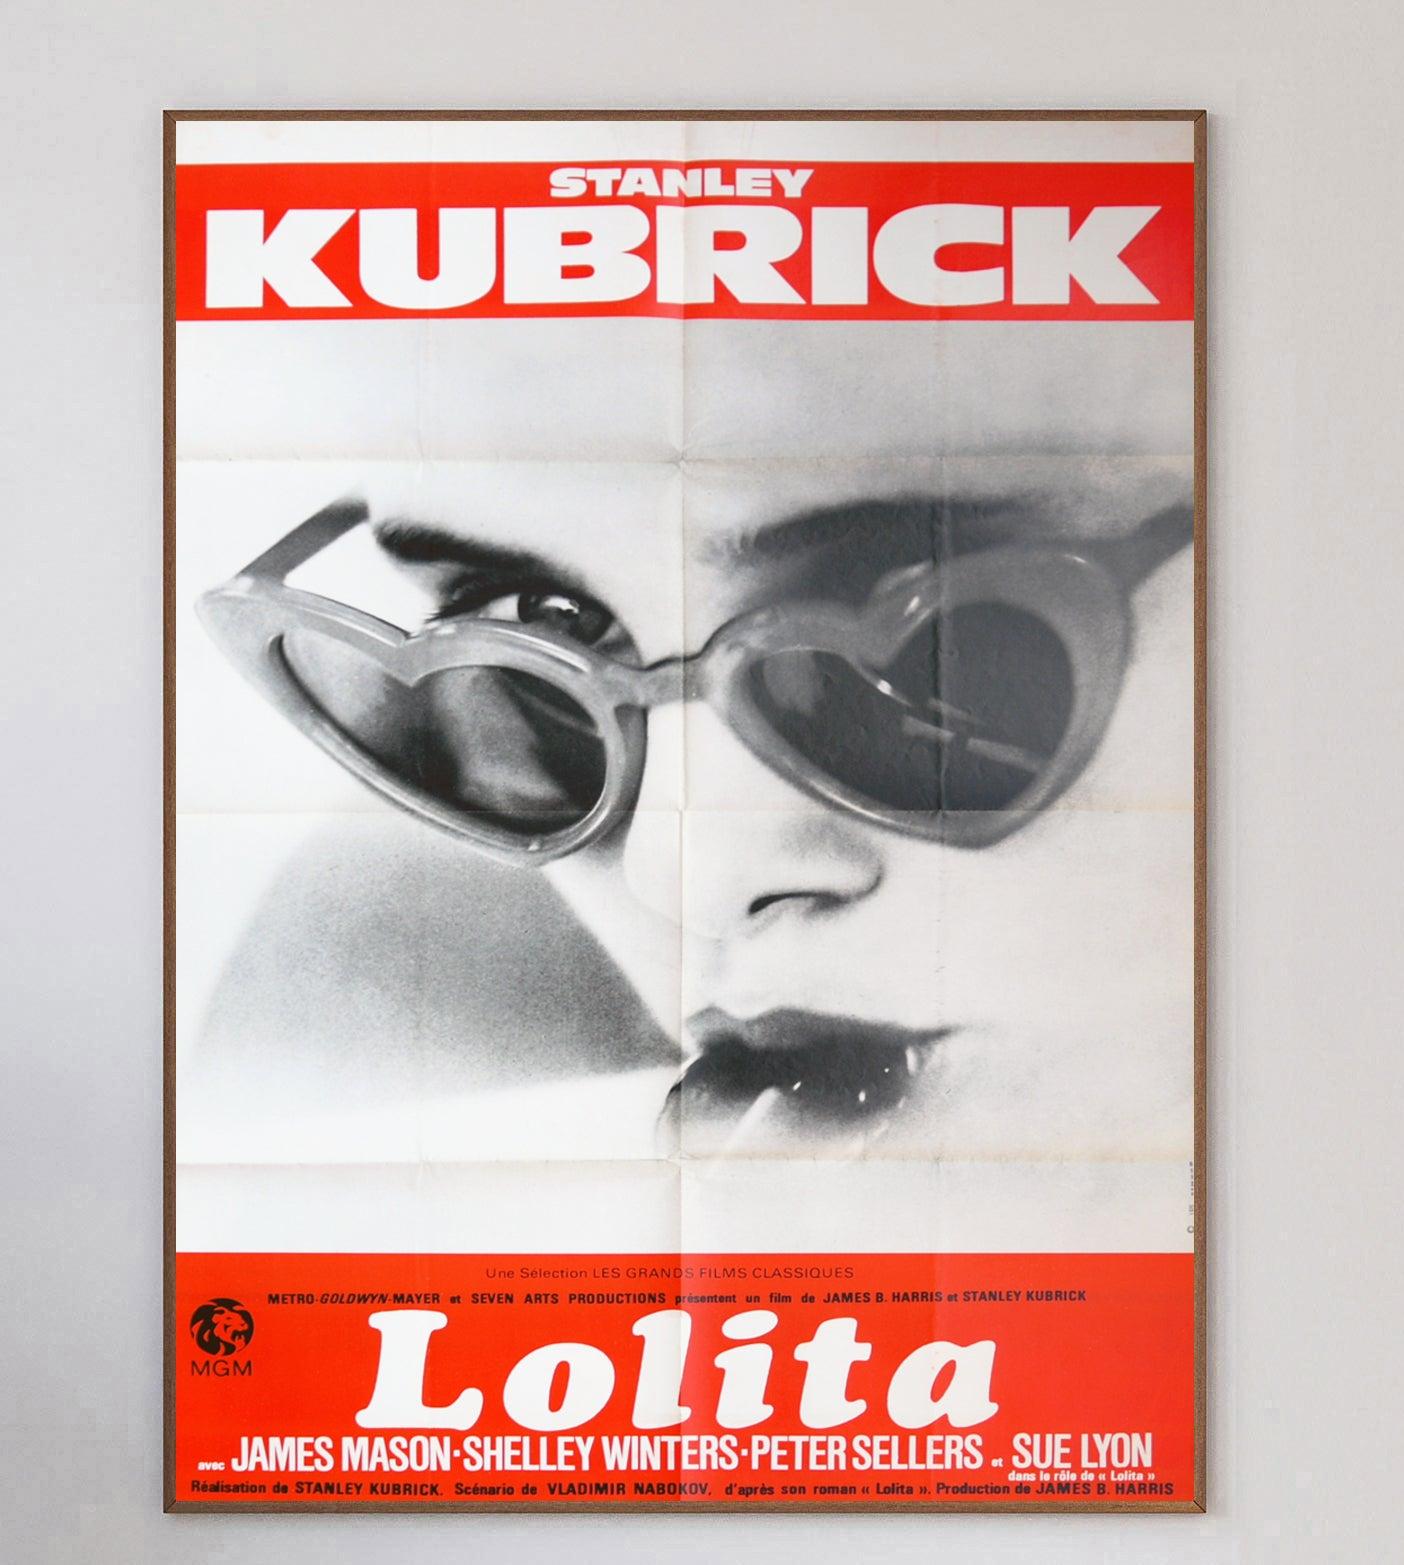 Inspiré du roman éponyme de Vladimir Nabokov paru en 1955, Lolita de Stanley Kubrick est sorti en 1962. Le film a été très controversé et fortement censuré à sa sortie, mais il est considéré comme un grand succès commercial et critique.

Cette